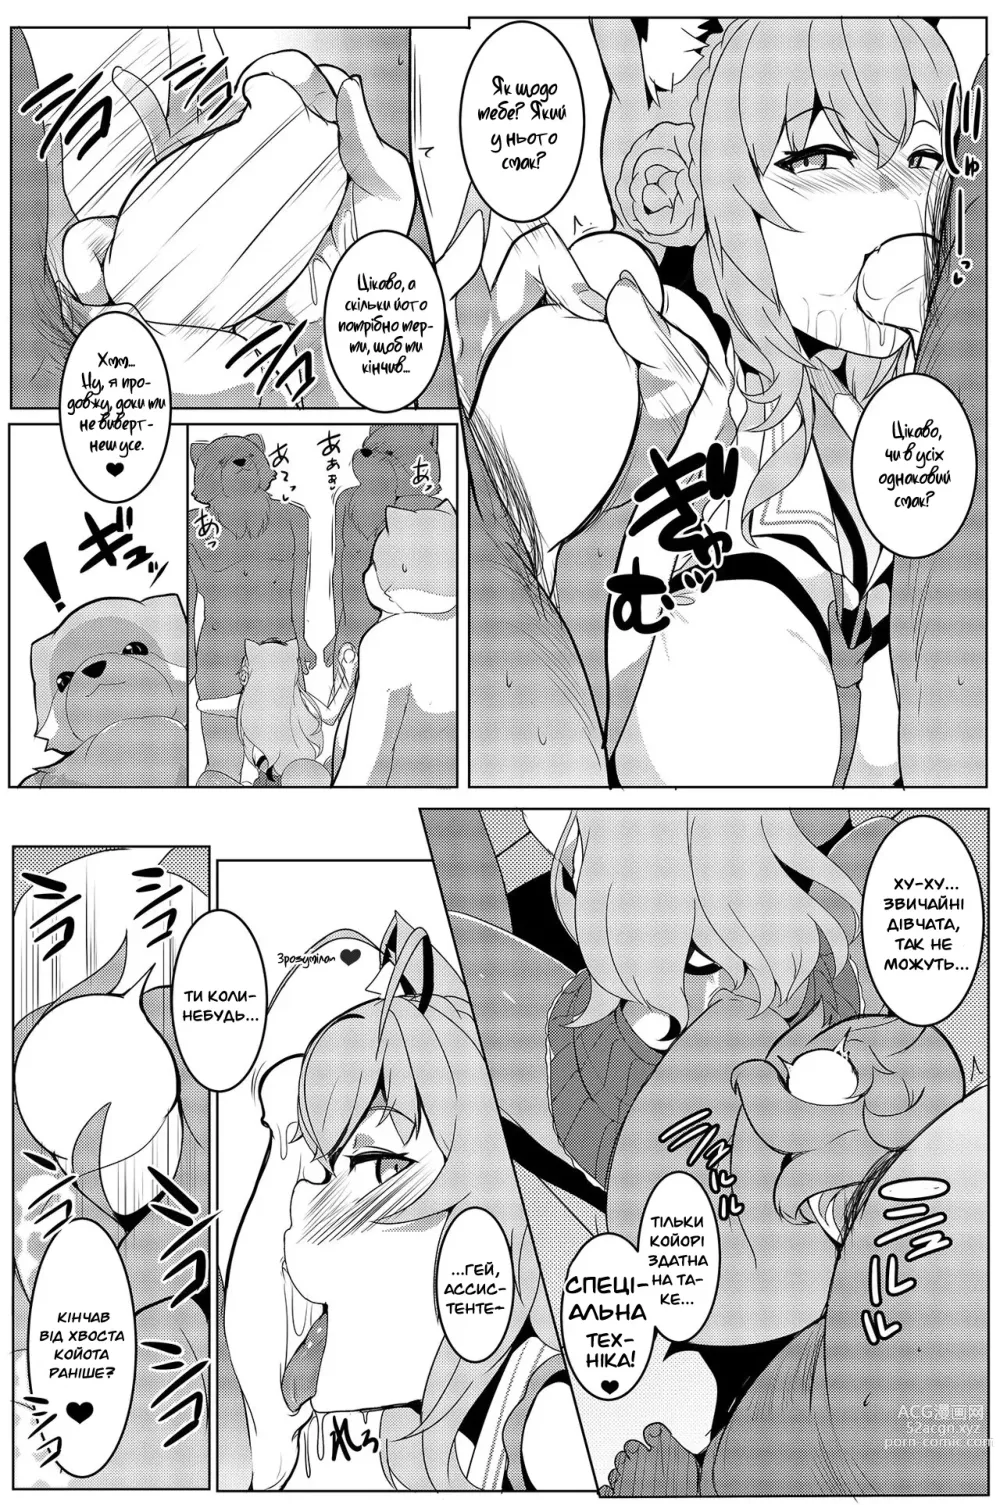 1000px x 1505px - Koyodashi | ÐšÐ¾Ð¹Ð¾Ð¿Ð°Ð¹ - Ukrainian Hentai Manga (Page 13)